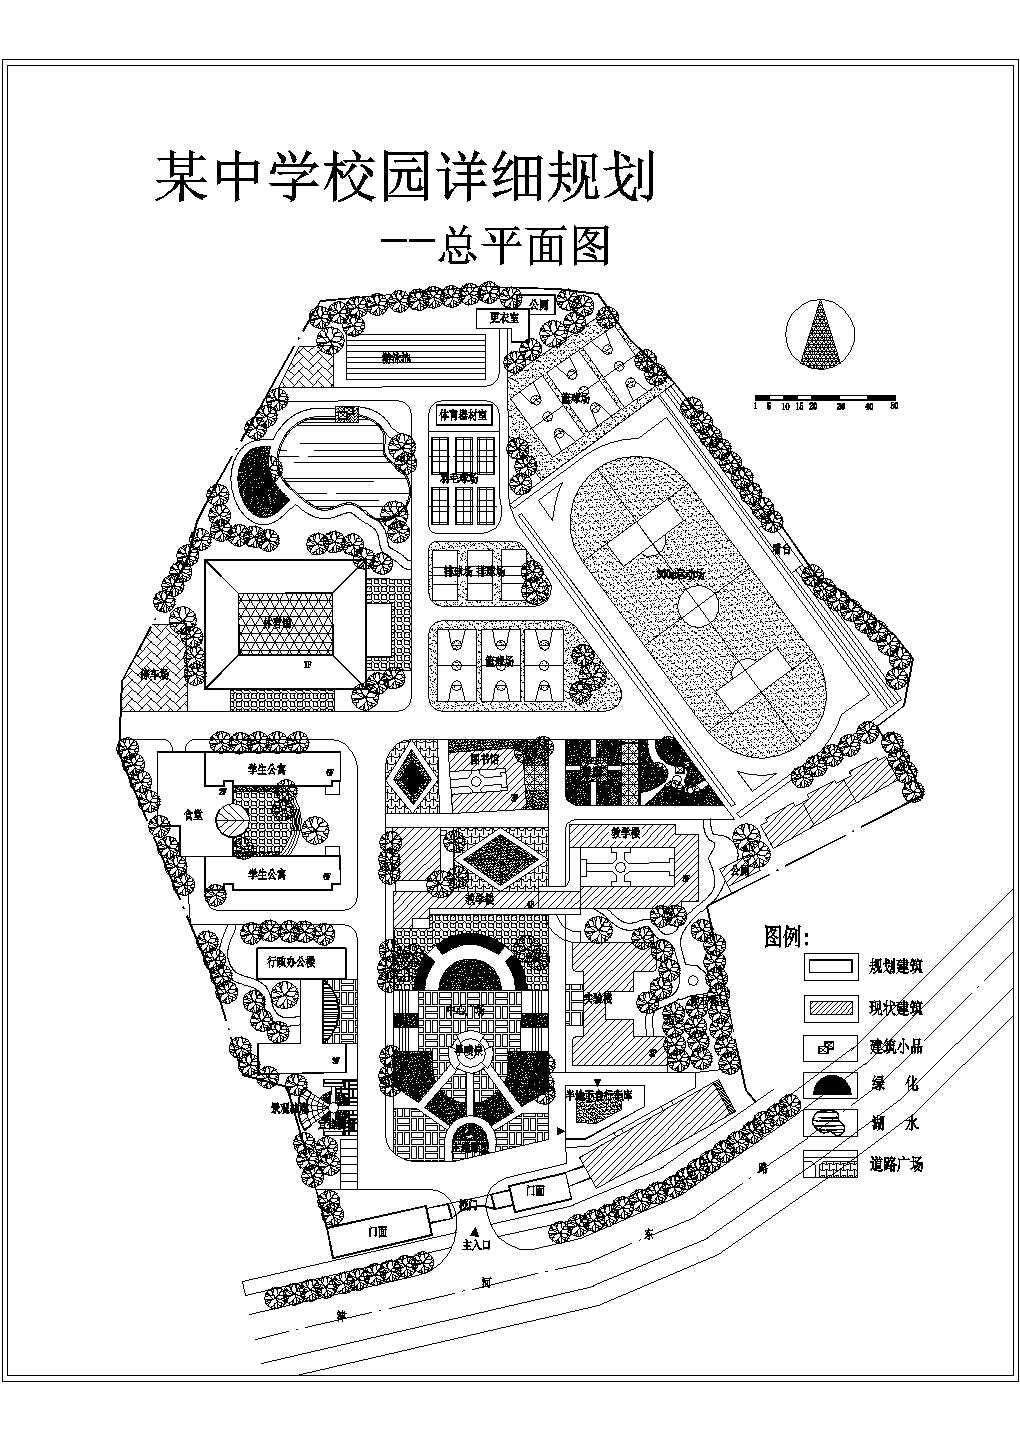 某校园CAD建筑设计规划总平面图